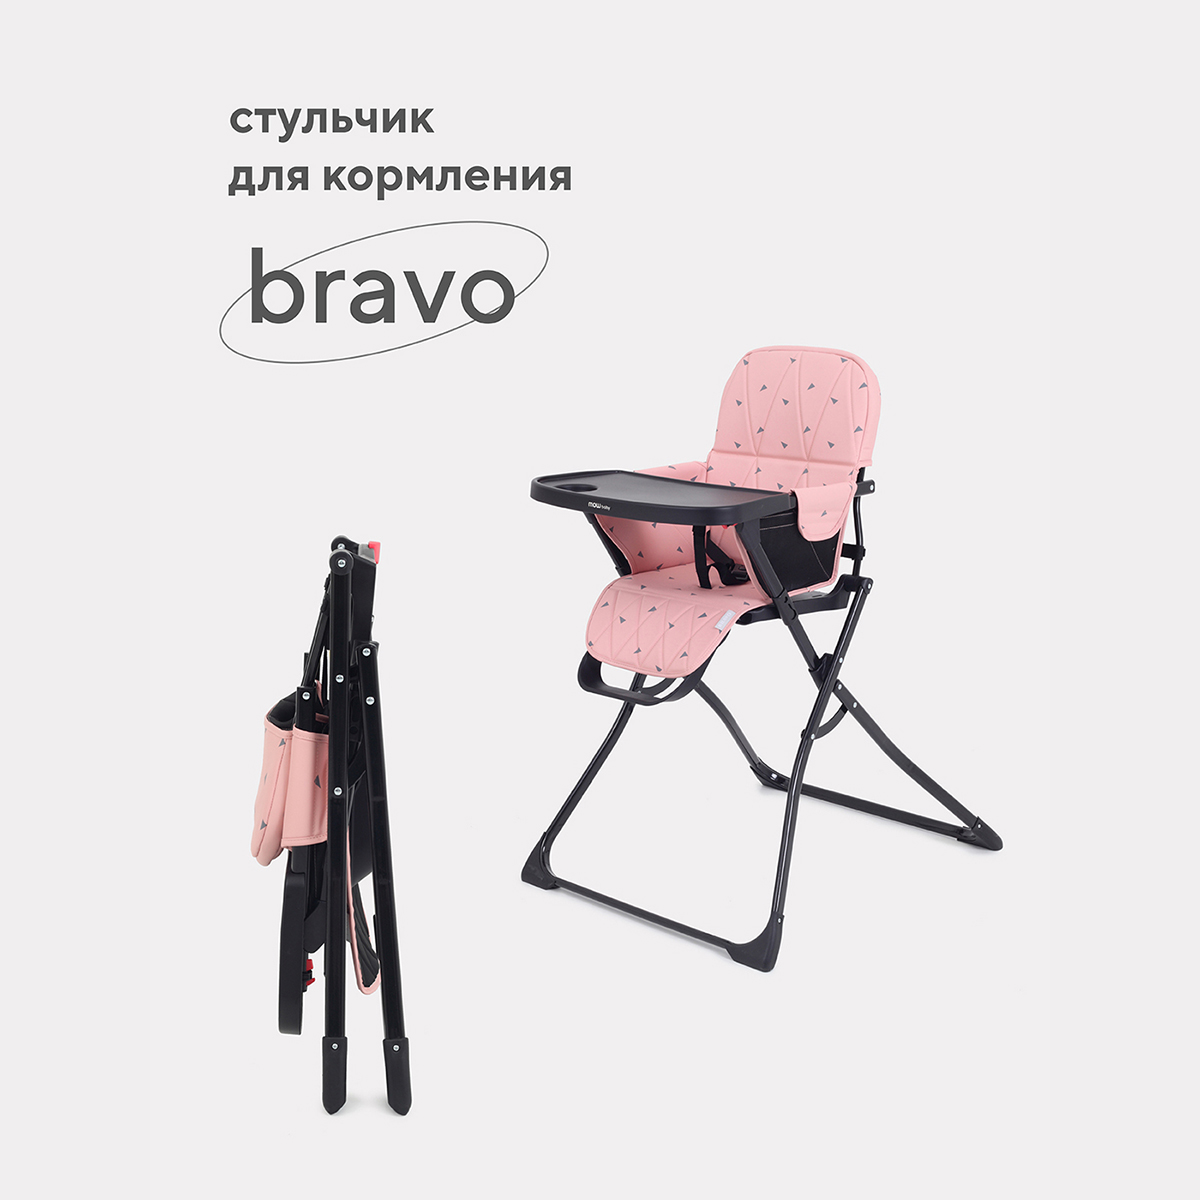 Стульчик для кормления Mowbaby Bravo RH510_cloud pink стульчик для кормления mowbaby bravo rh510 cloud pink